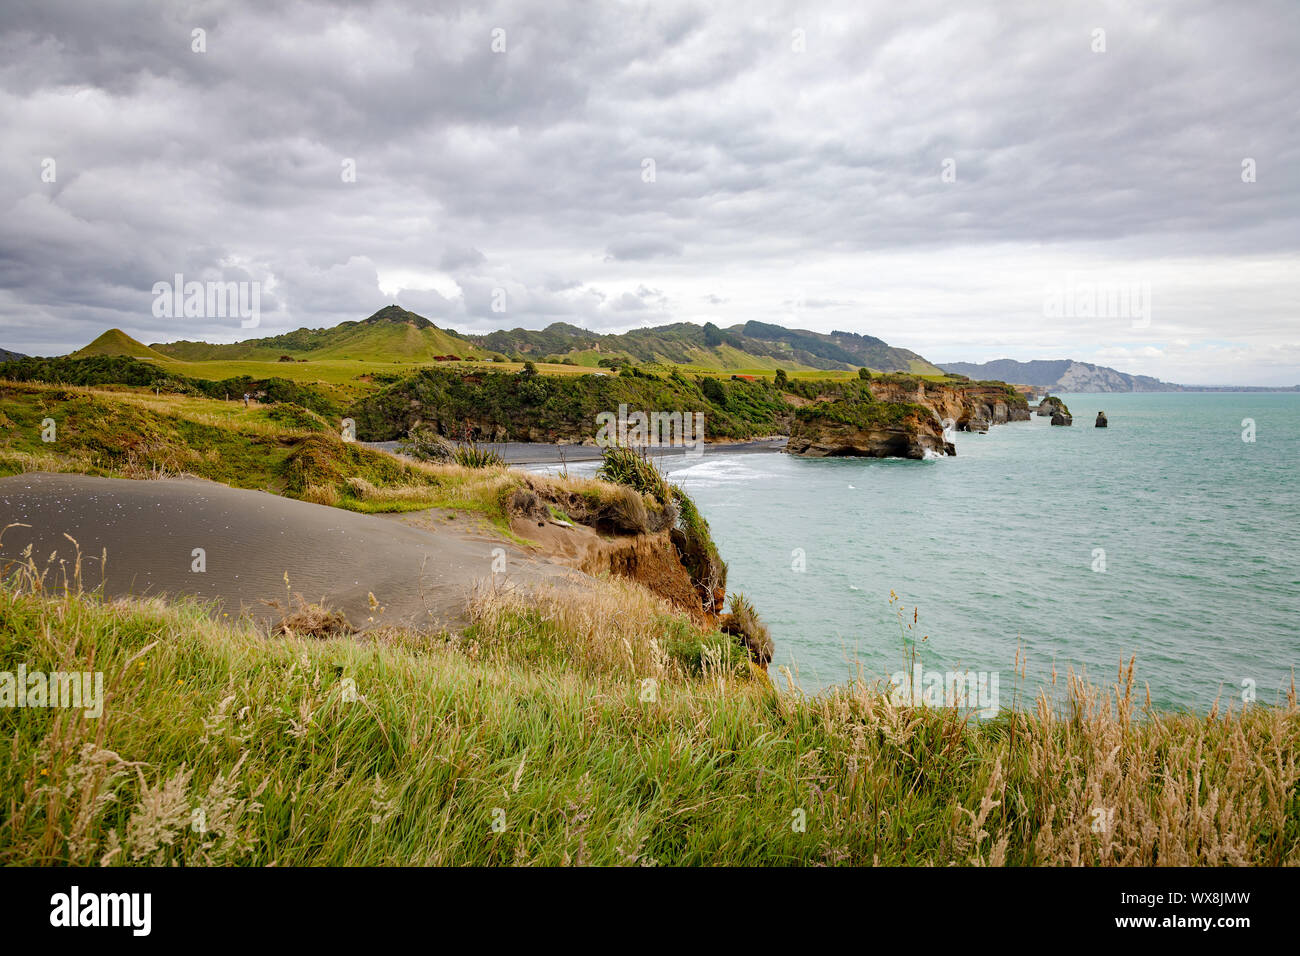 sea shore rocks and mount Taranaki, New Zealand Stock Photo